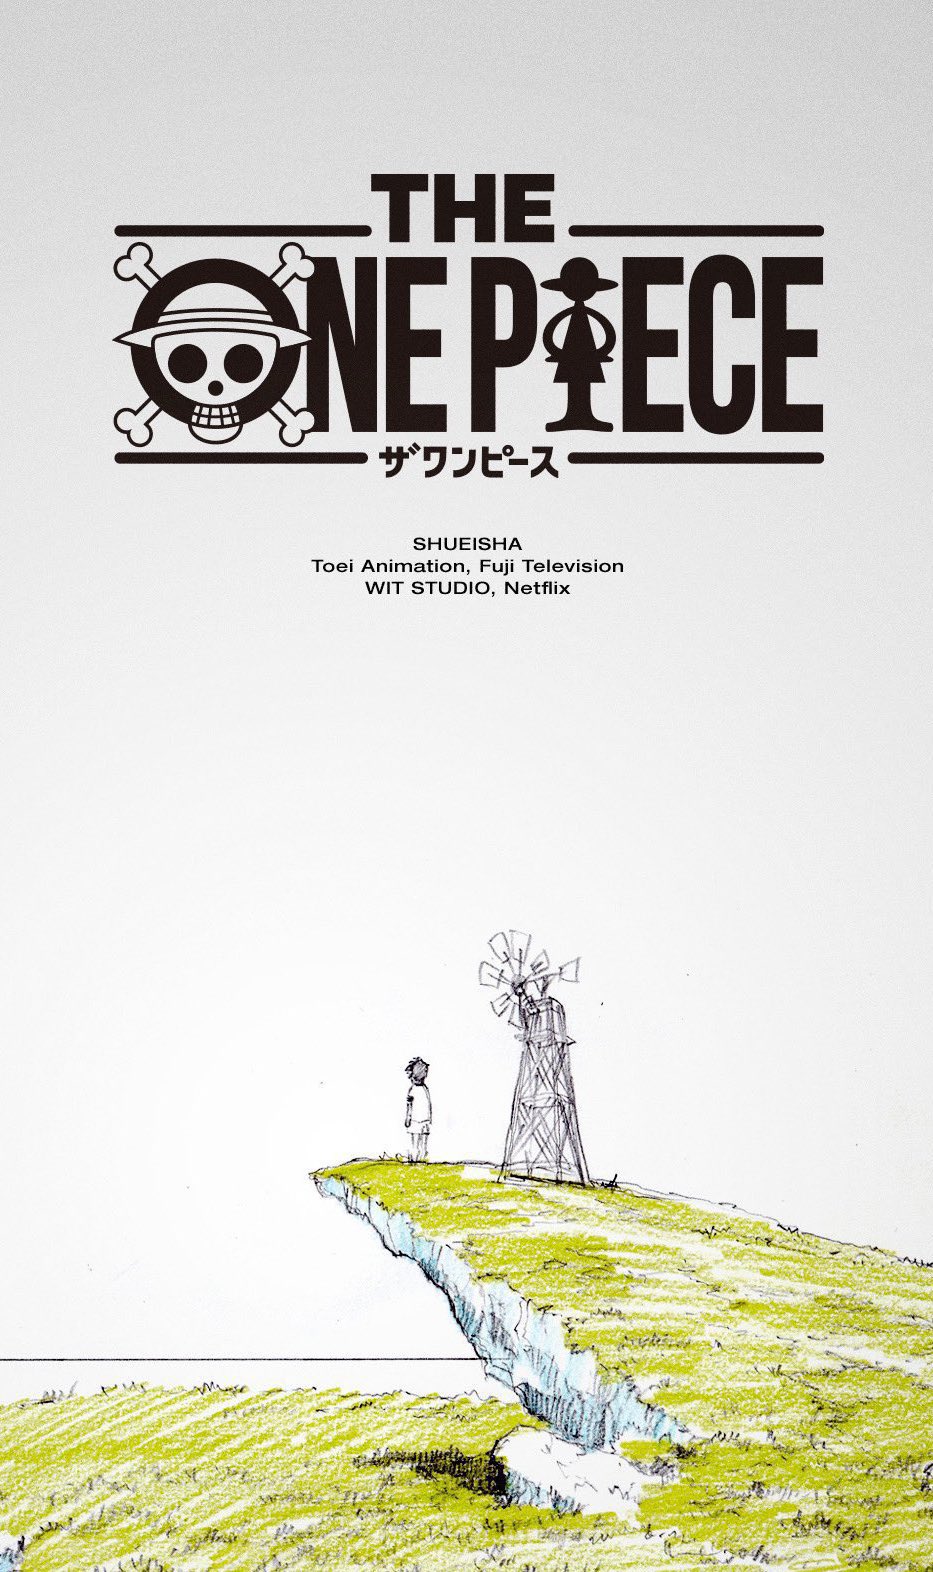 Portal Box Office on X: Rumo a Alabasta!! One Piece: A Série foi